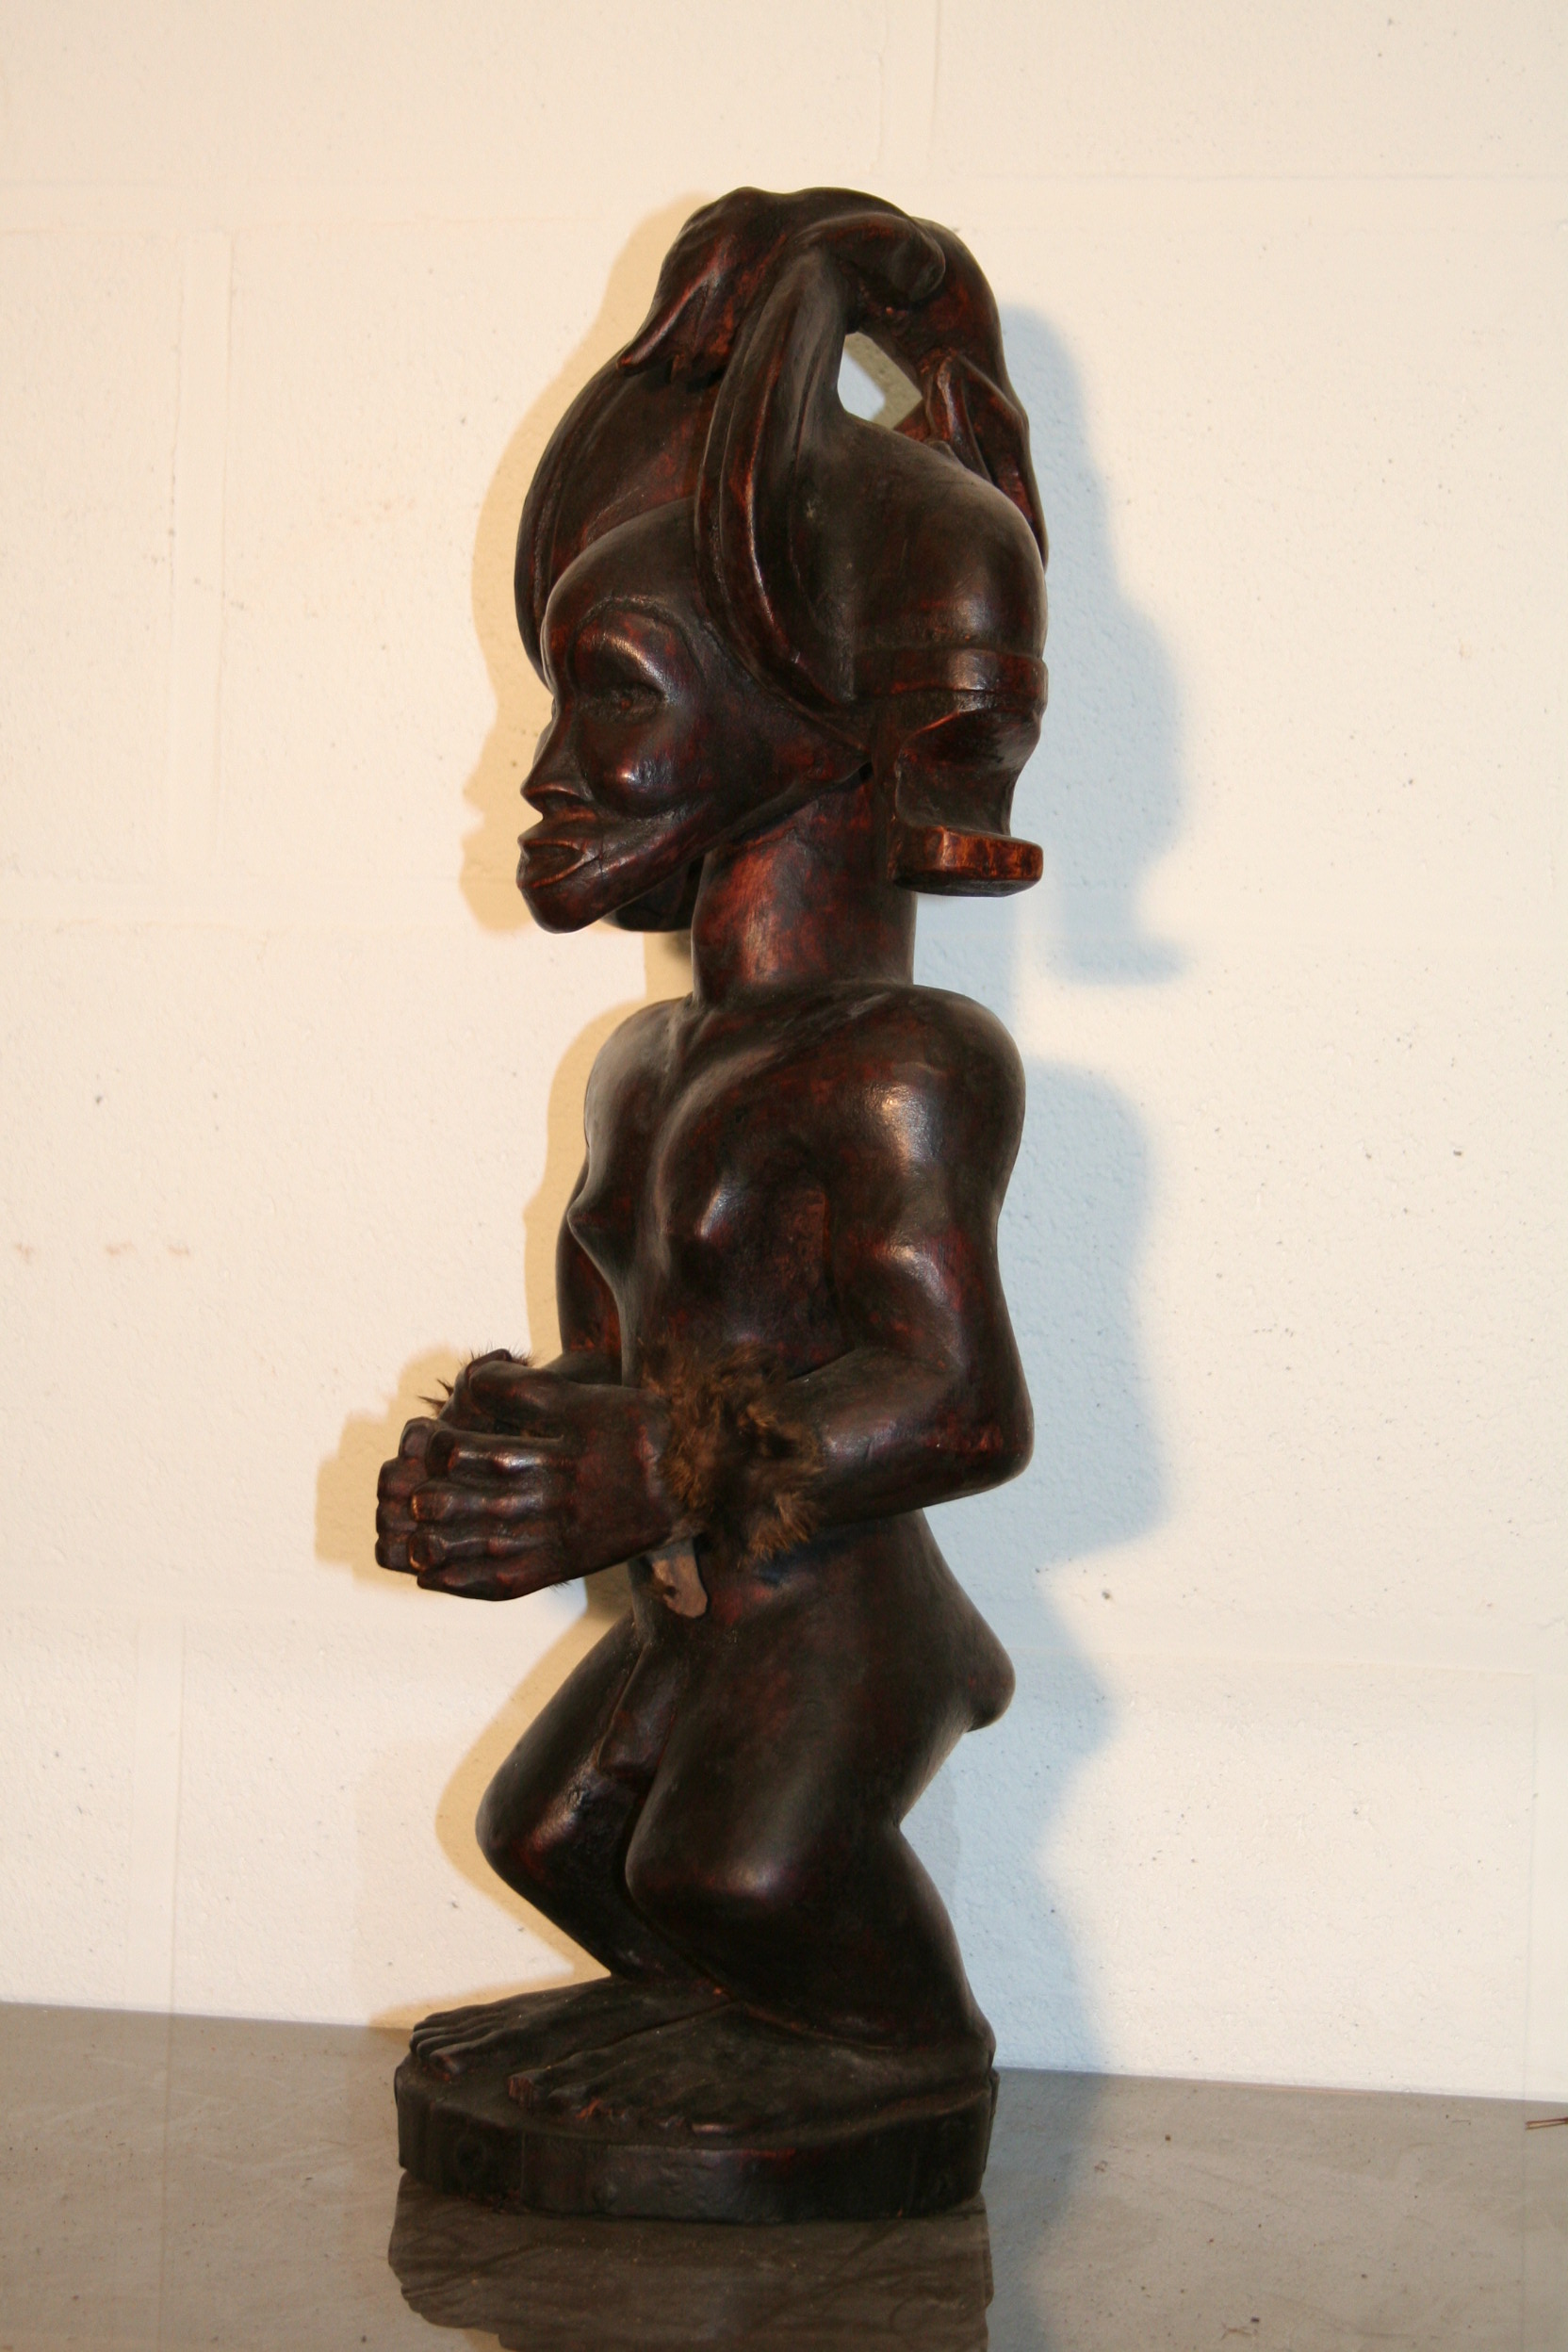 tchokwe(statue Tshibinga), d`afrique : R.d.du Congo, statuette tchokwe(statue Tshibinga), masque ancien africain tchokwe(statue Tshibinga), art du R.d.du Congo - Art Africain, collection privées Belgique. Statue africaine de la tribu des tchokwe(statue Tshibinga), provenant du R.d.du Congo, 1648:statue représentant Tshibinga Ilunga,l